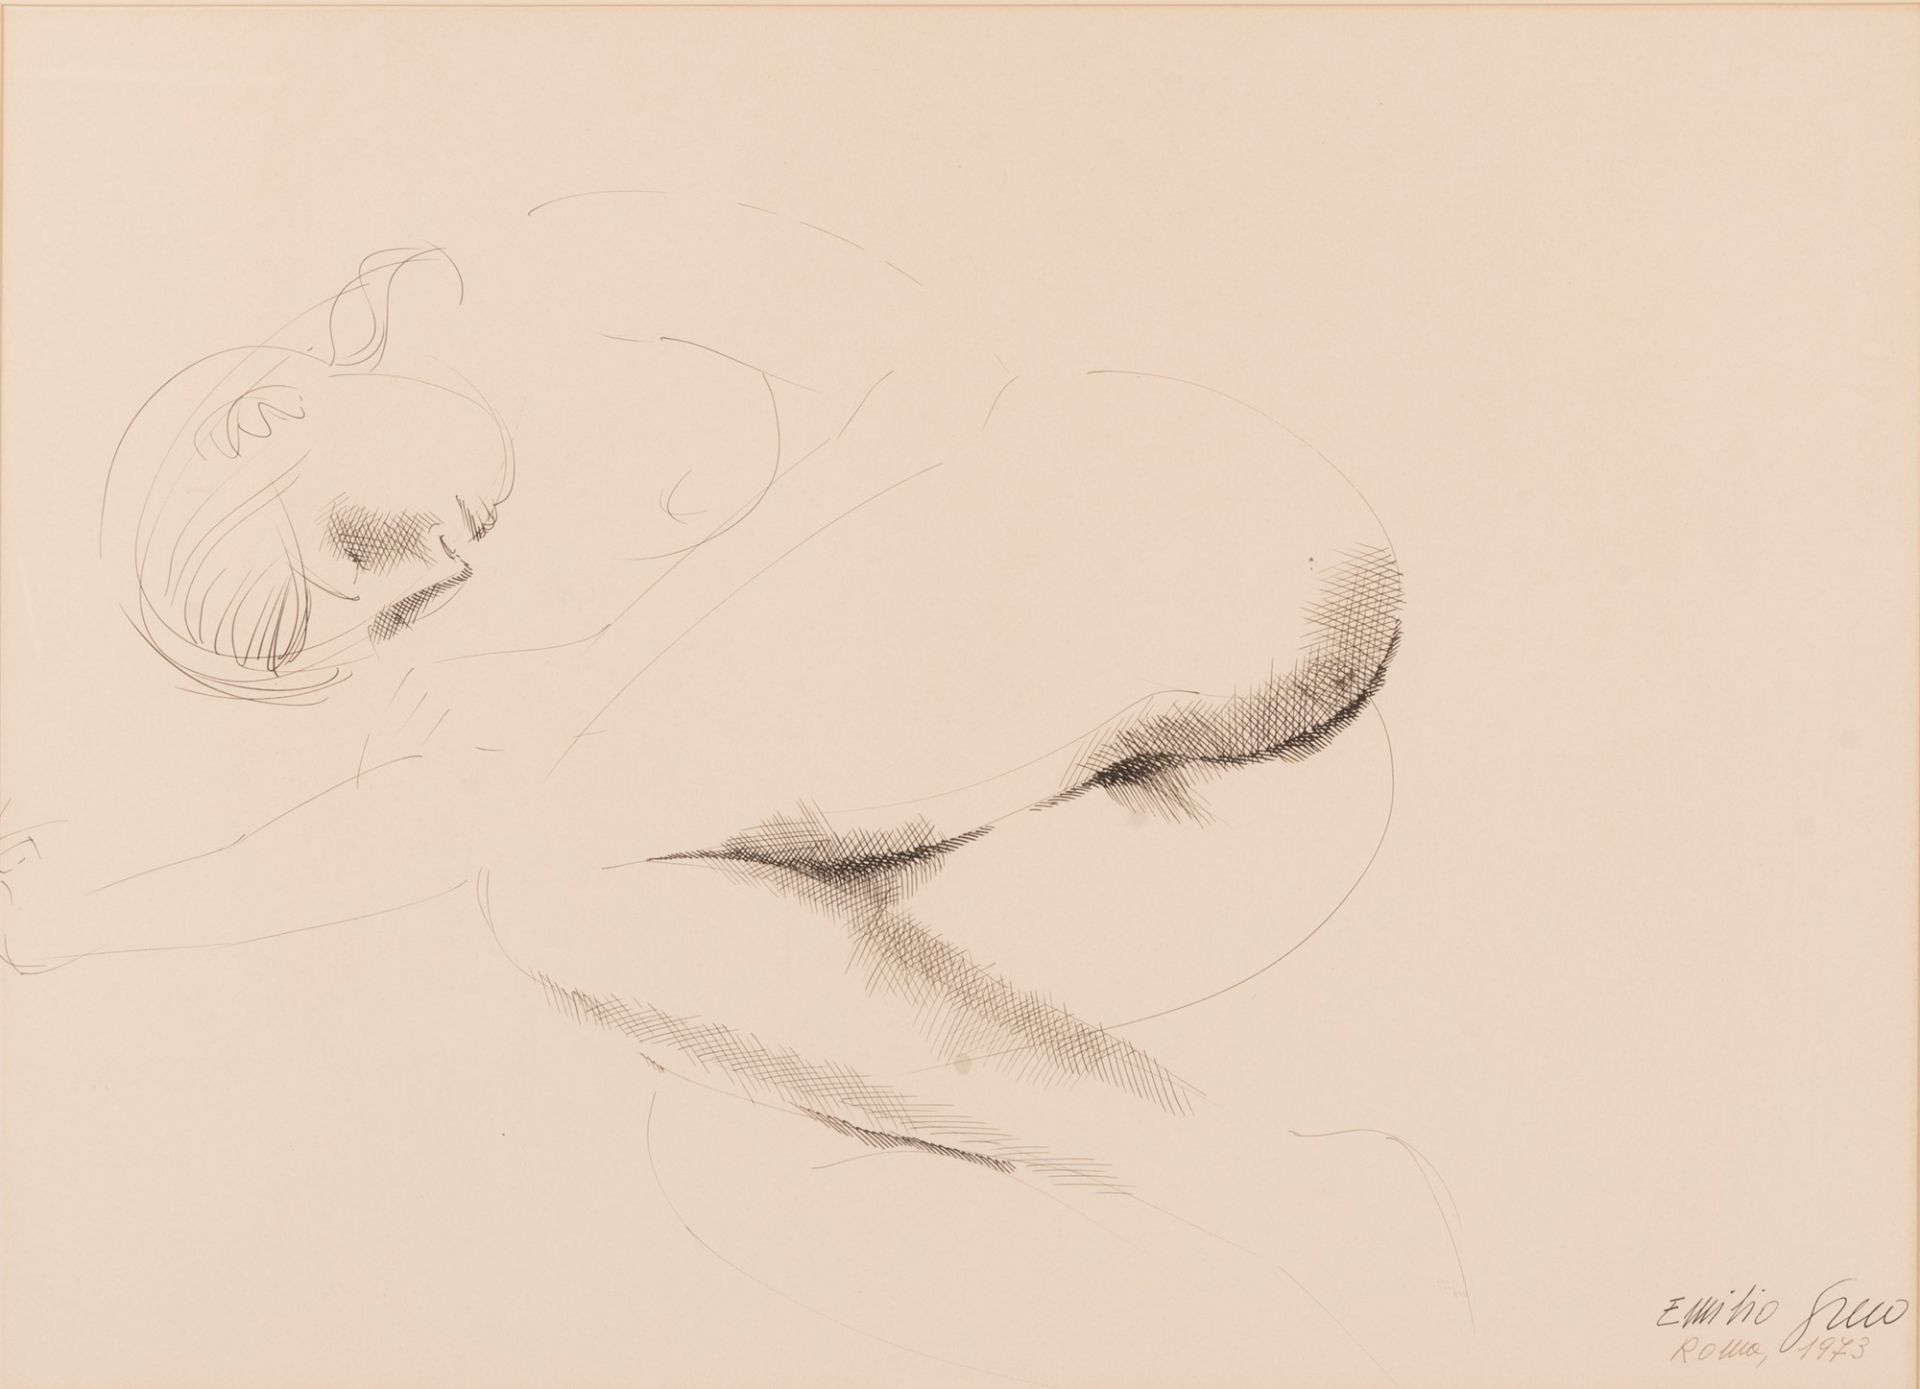 Emilio Greco 
(Catania, 1913 - Roma, 1995) 
Nudo di donna 
1973